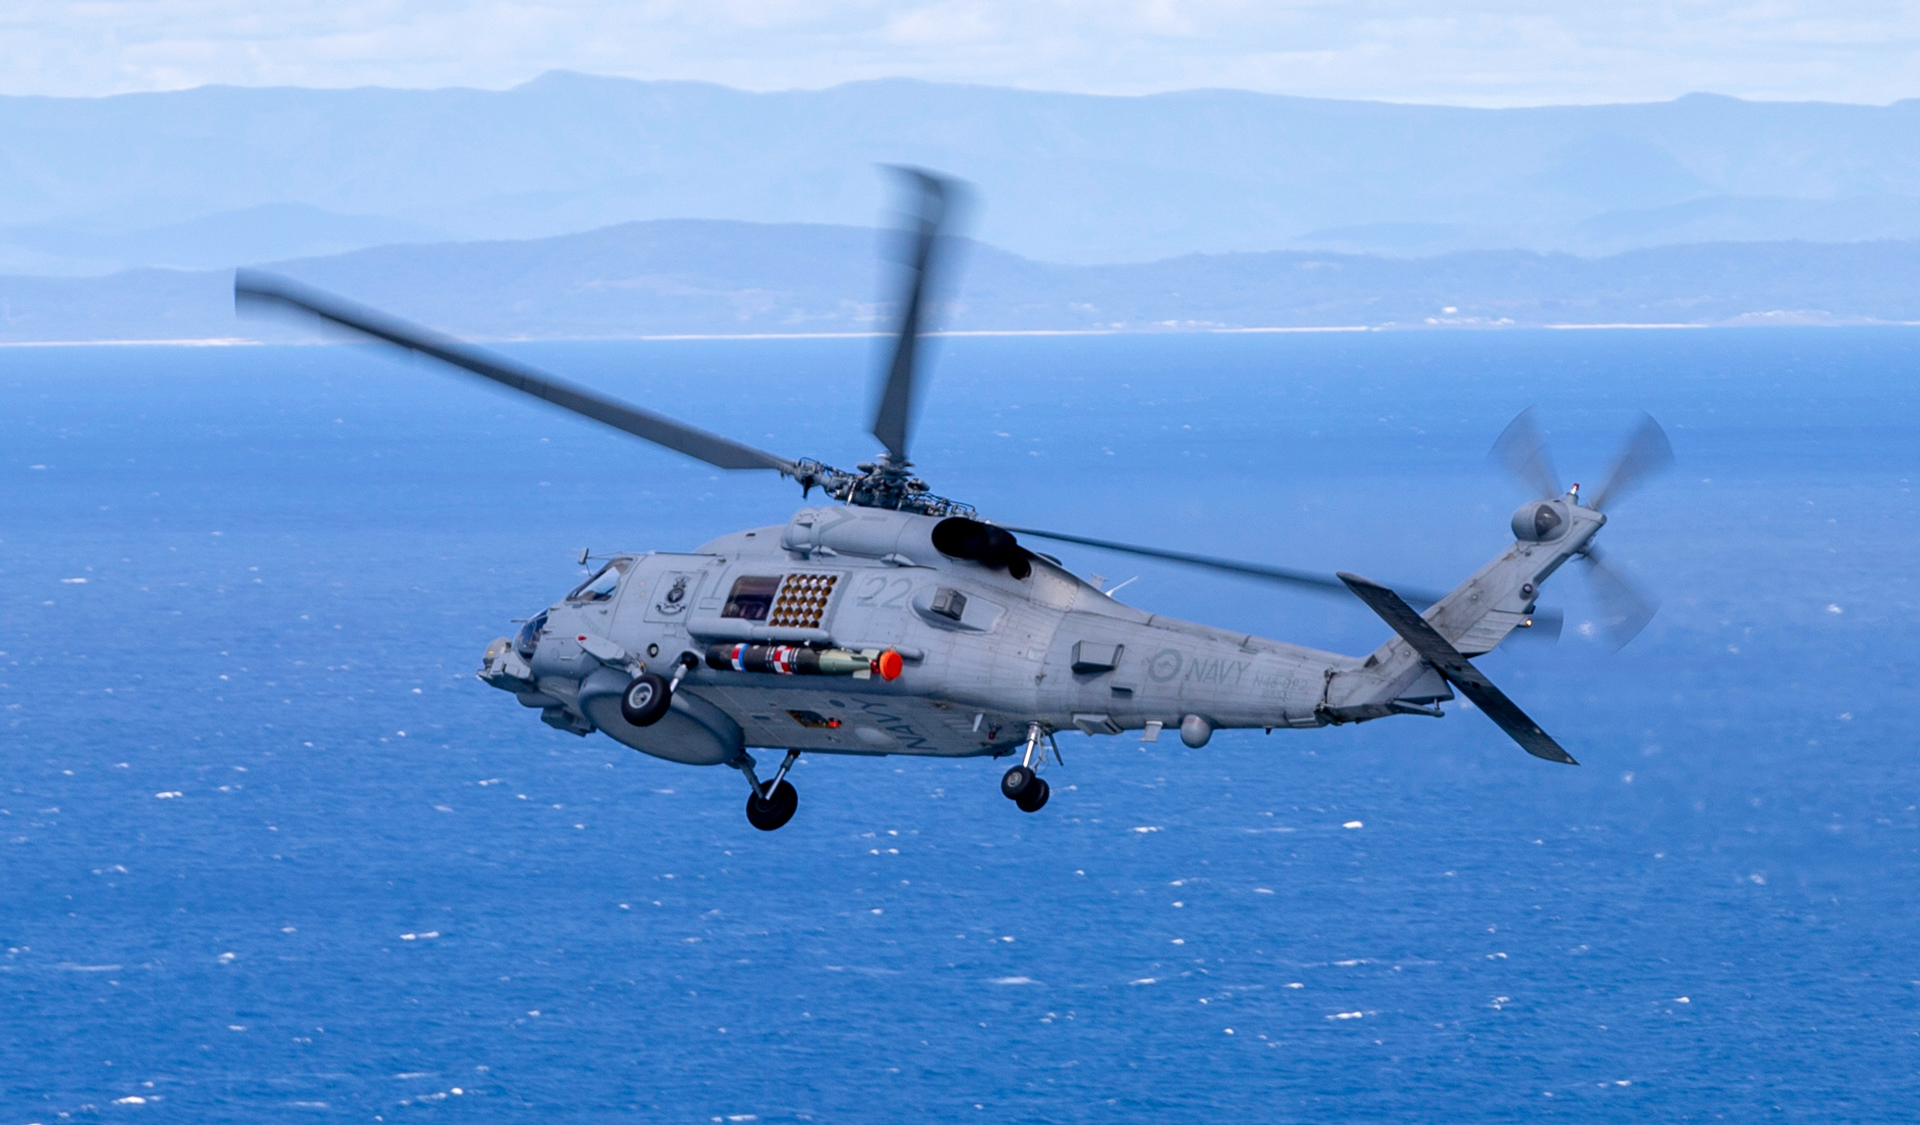 澳大利亚皇家海军向美国海军MH-60R直升机下了第二份订单。照片礼貌了。